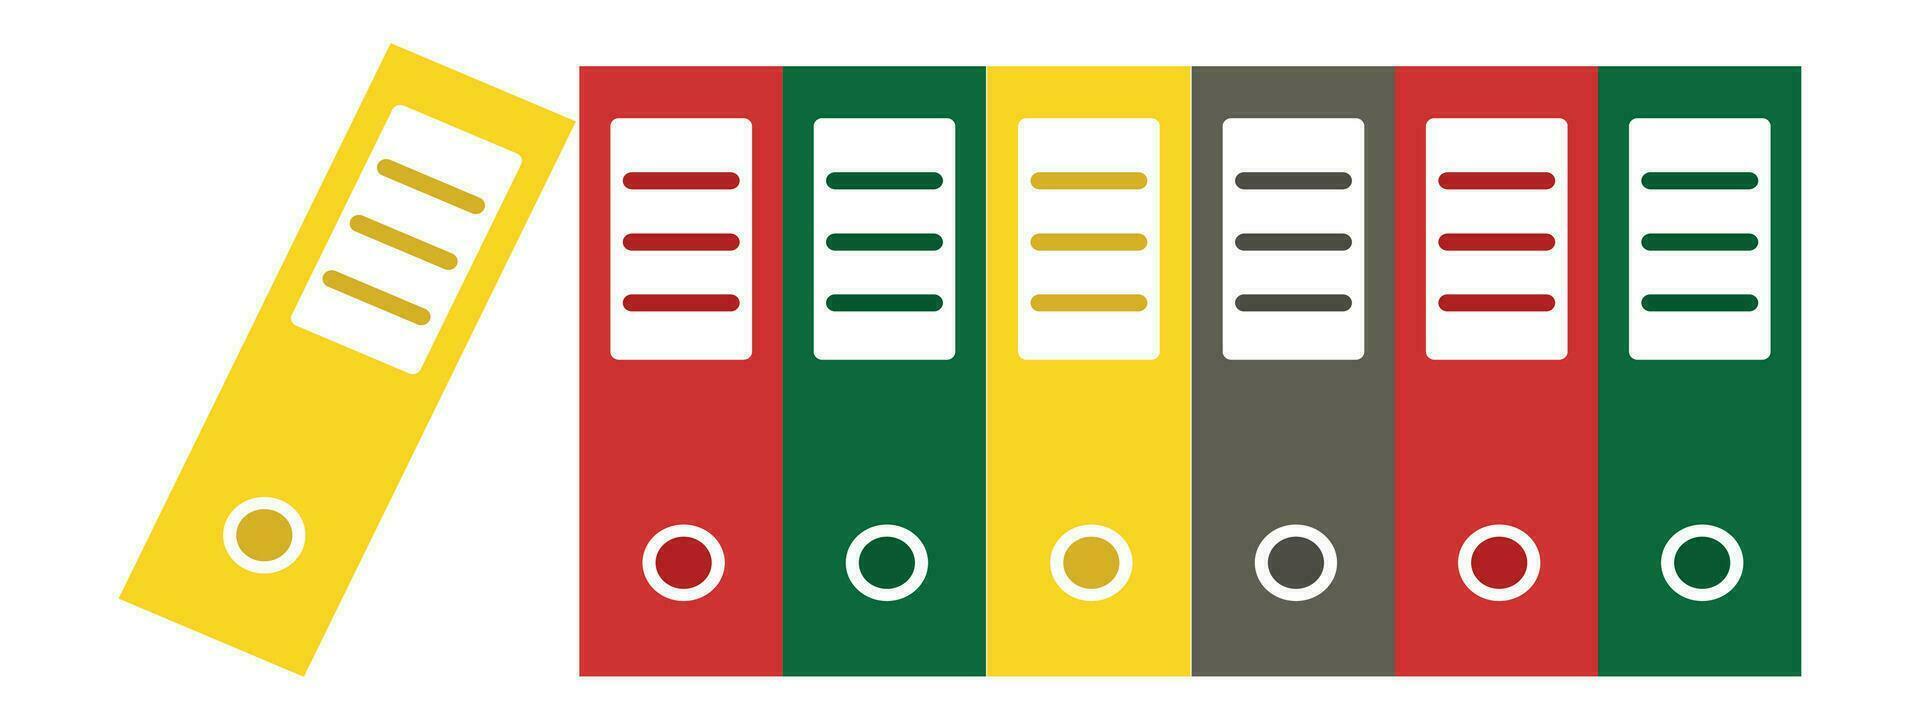 oficina archivo icono en vector y archivo vector y amarillo , rojo y verde archivo icono y vector diseño ilustración de oficina mesa archivo